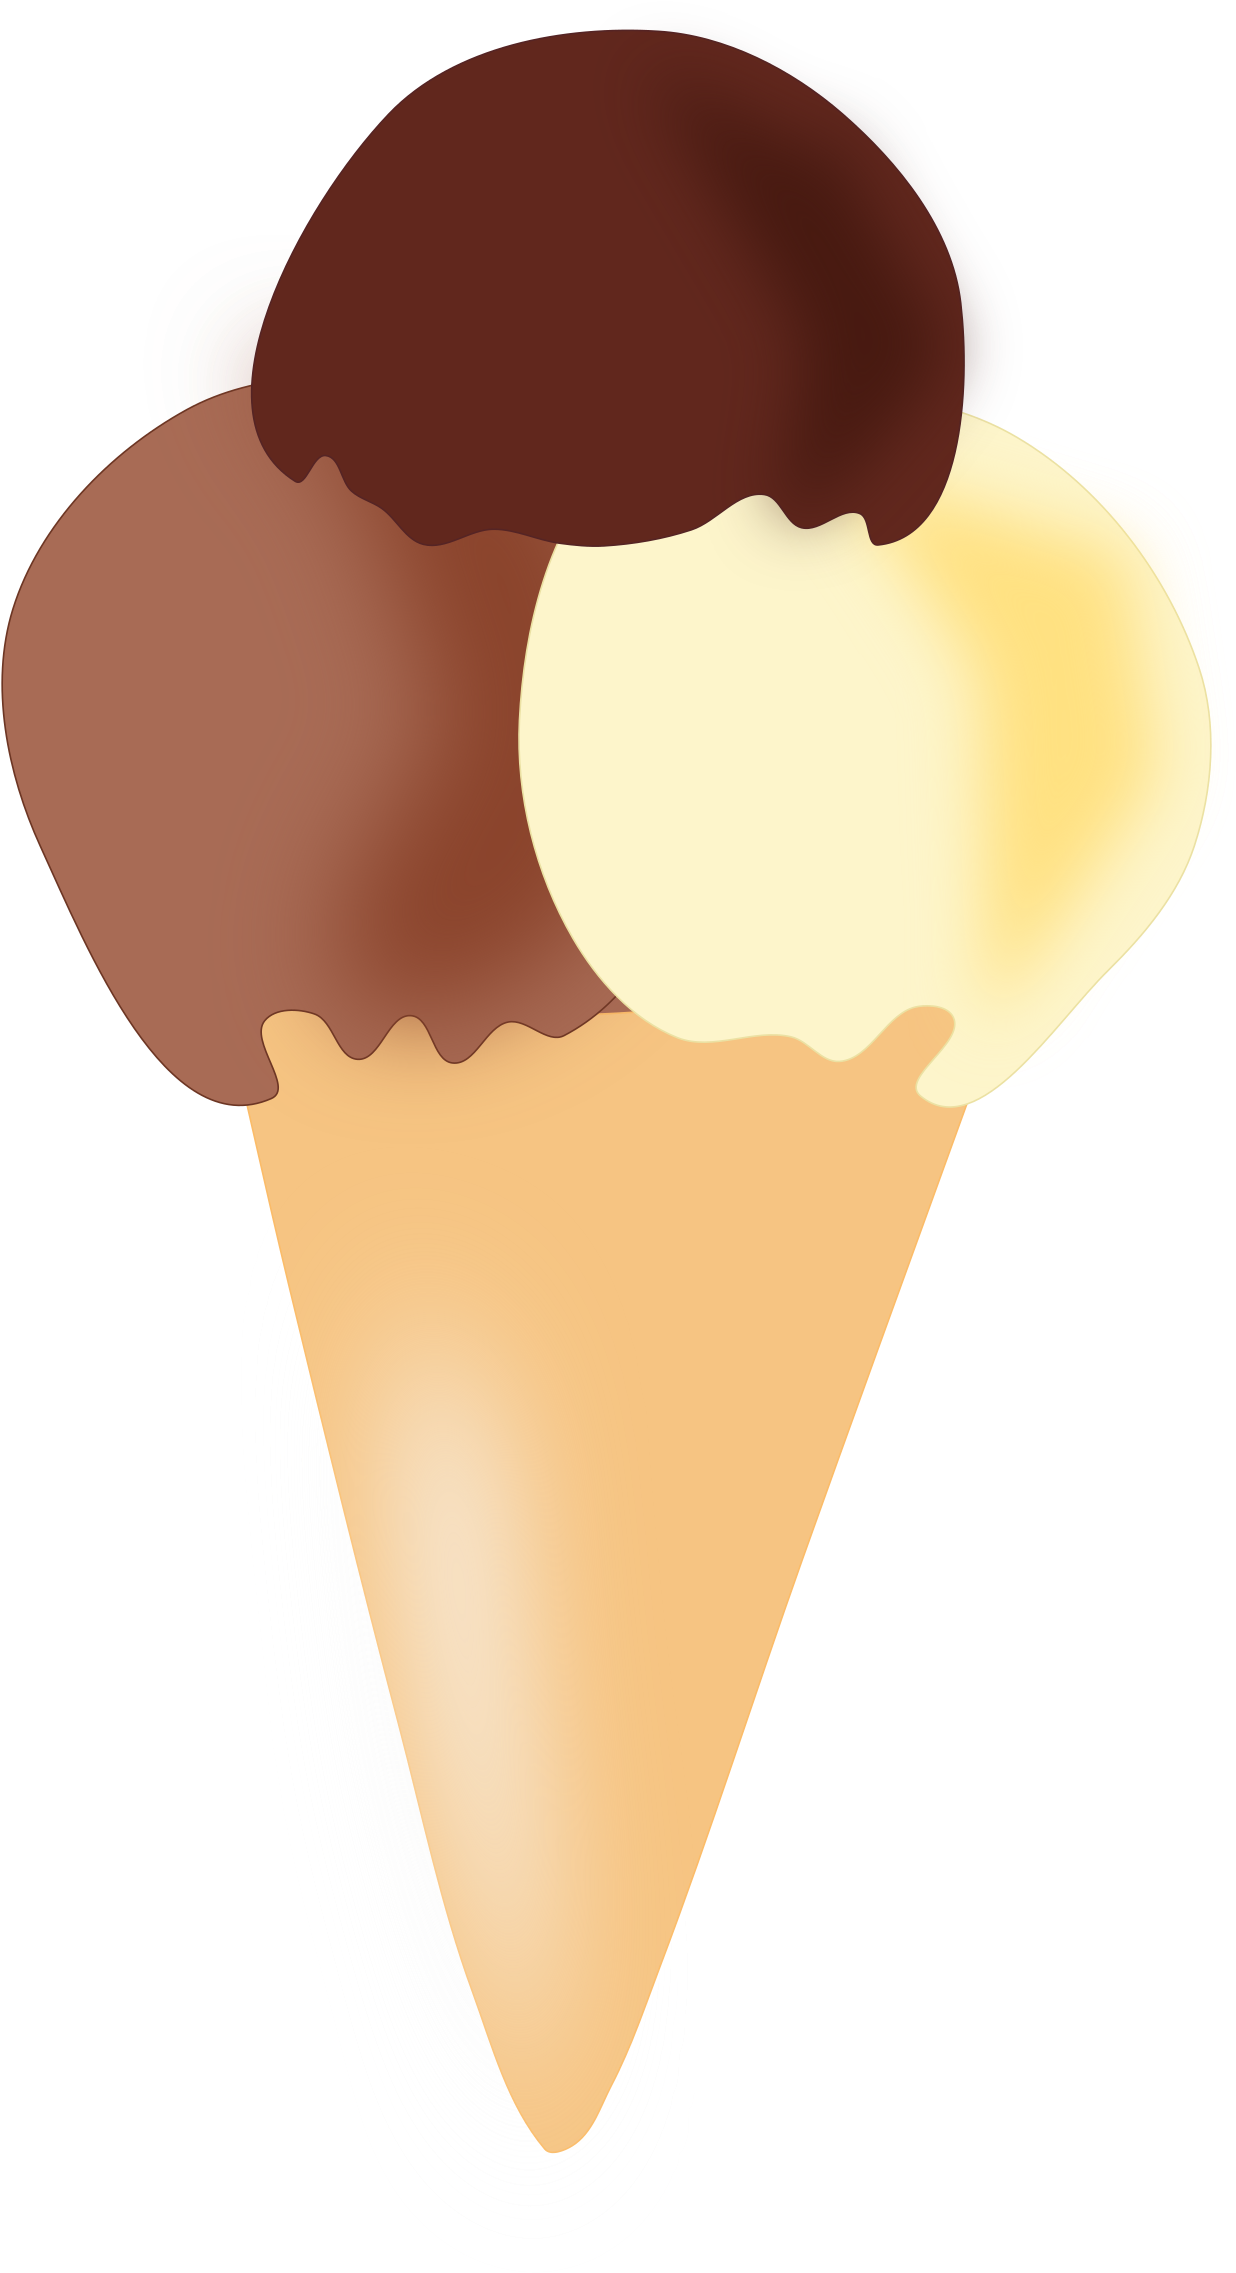 A Chocolate And Vanilla Ice Cream Cone